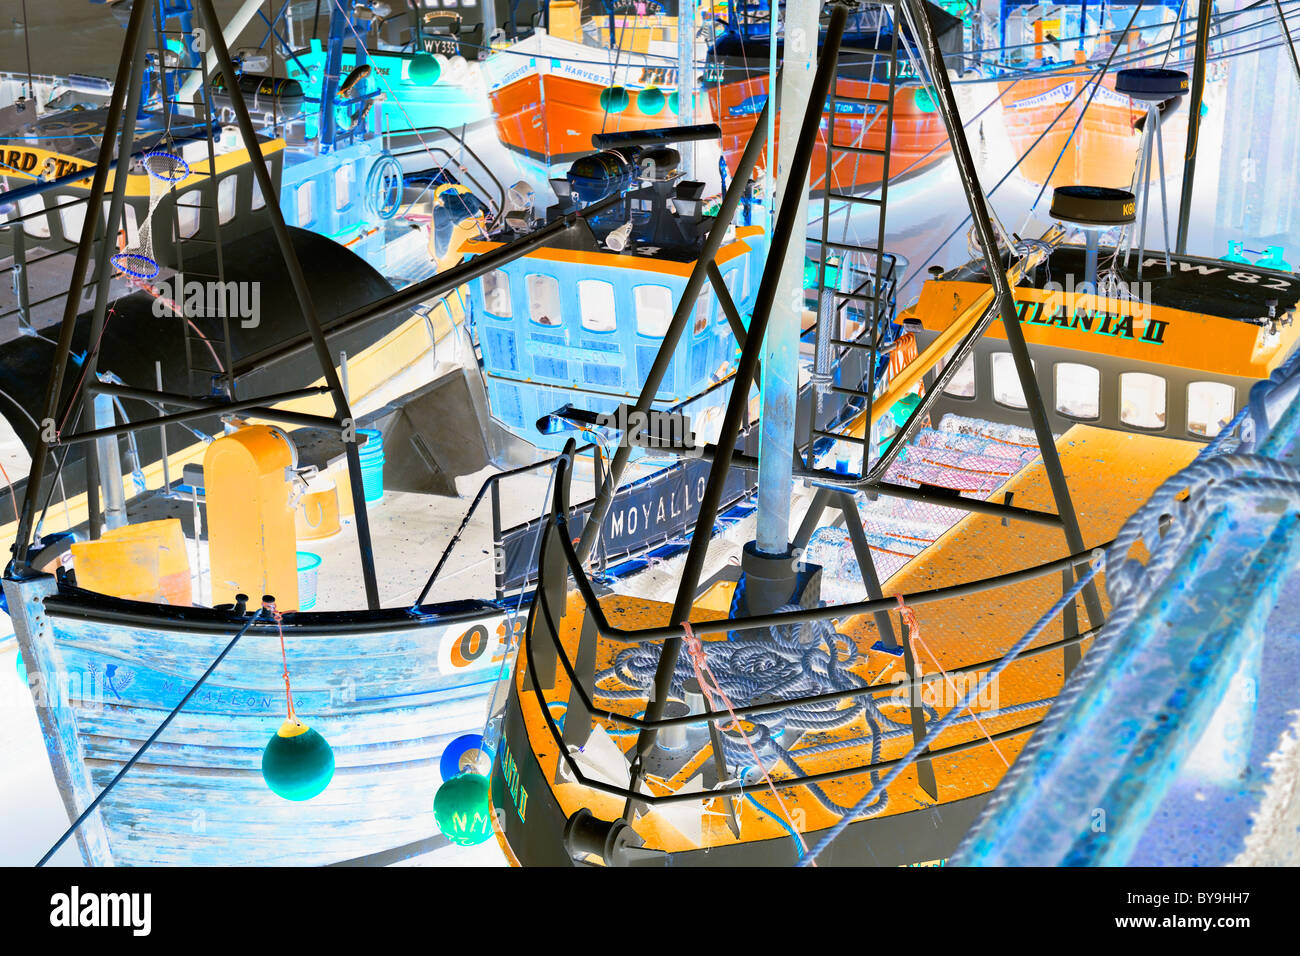 Digital manipulierte Bild von Fischerbooten, Bridlington Harbour, Yorkshire, England Stockfoto